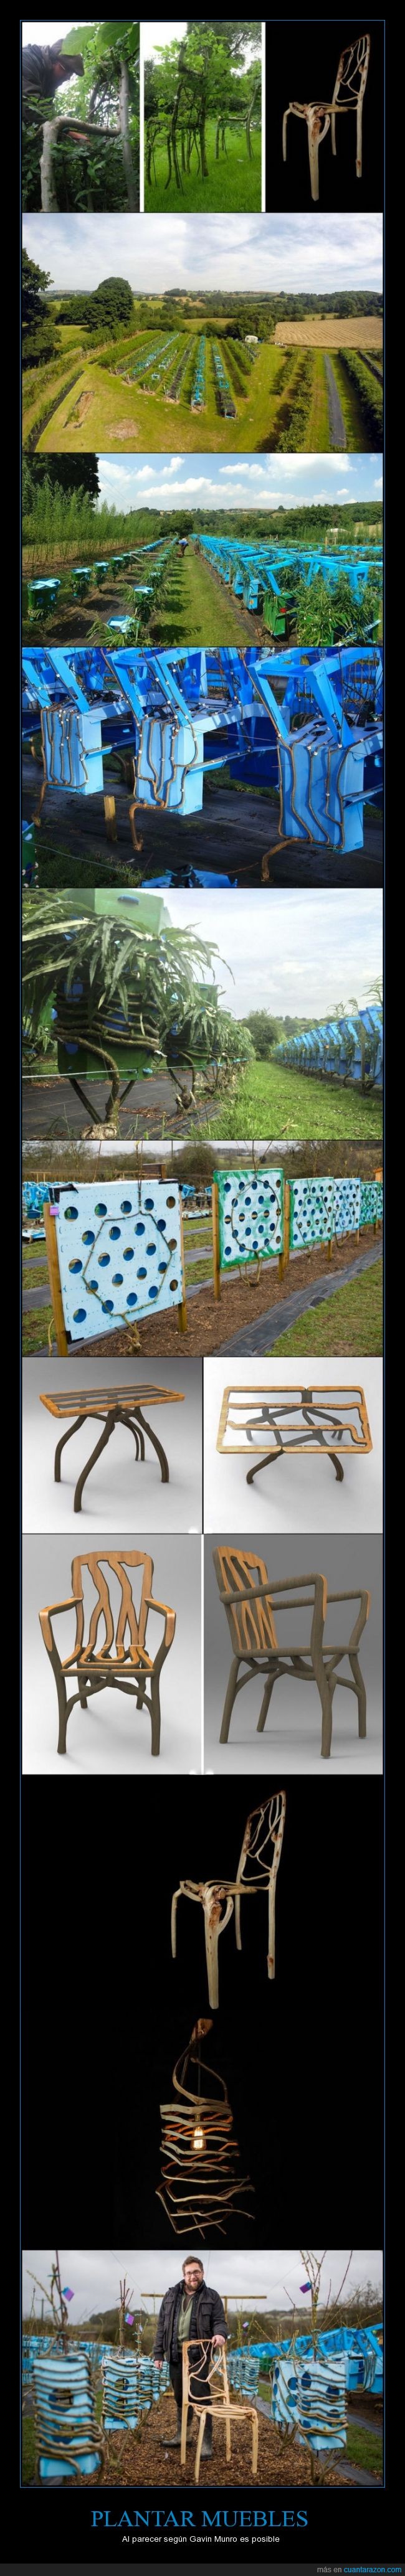 plantar,mueble,arbol,silla,Gavin Munro,posible,muebles